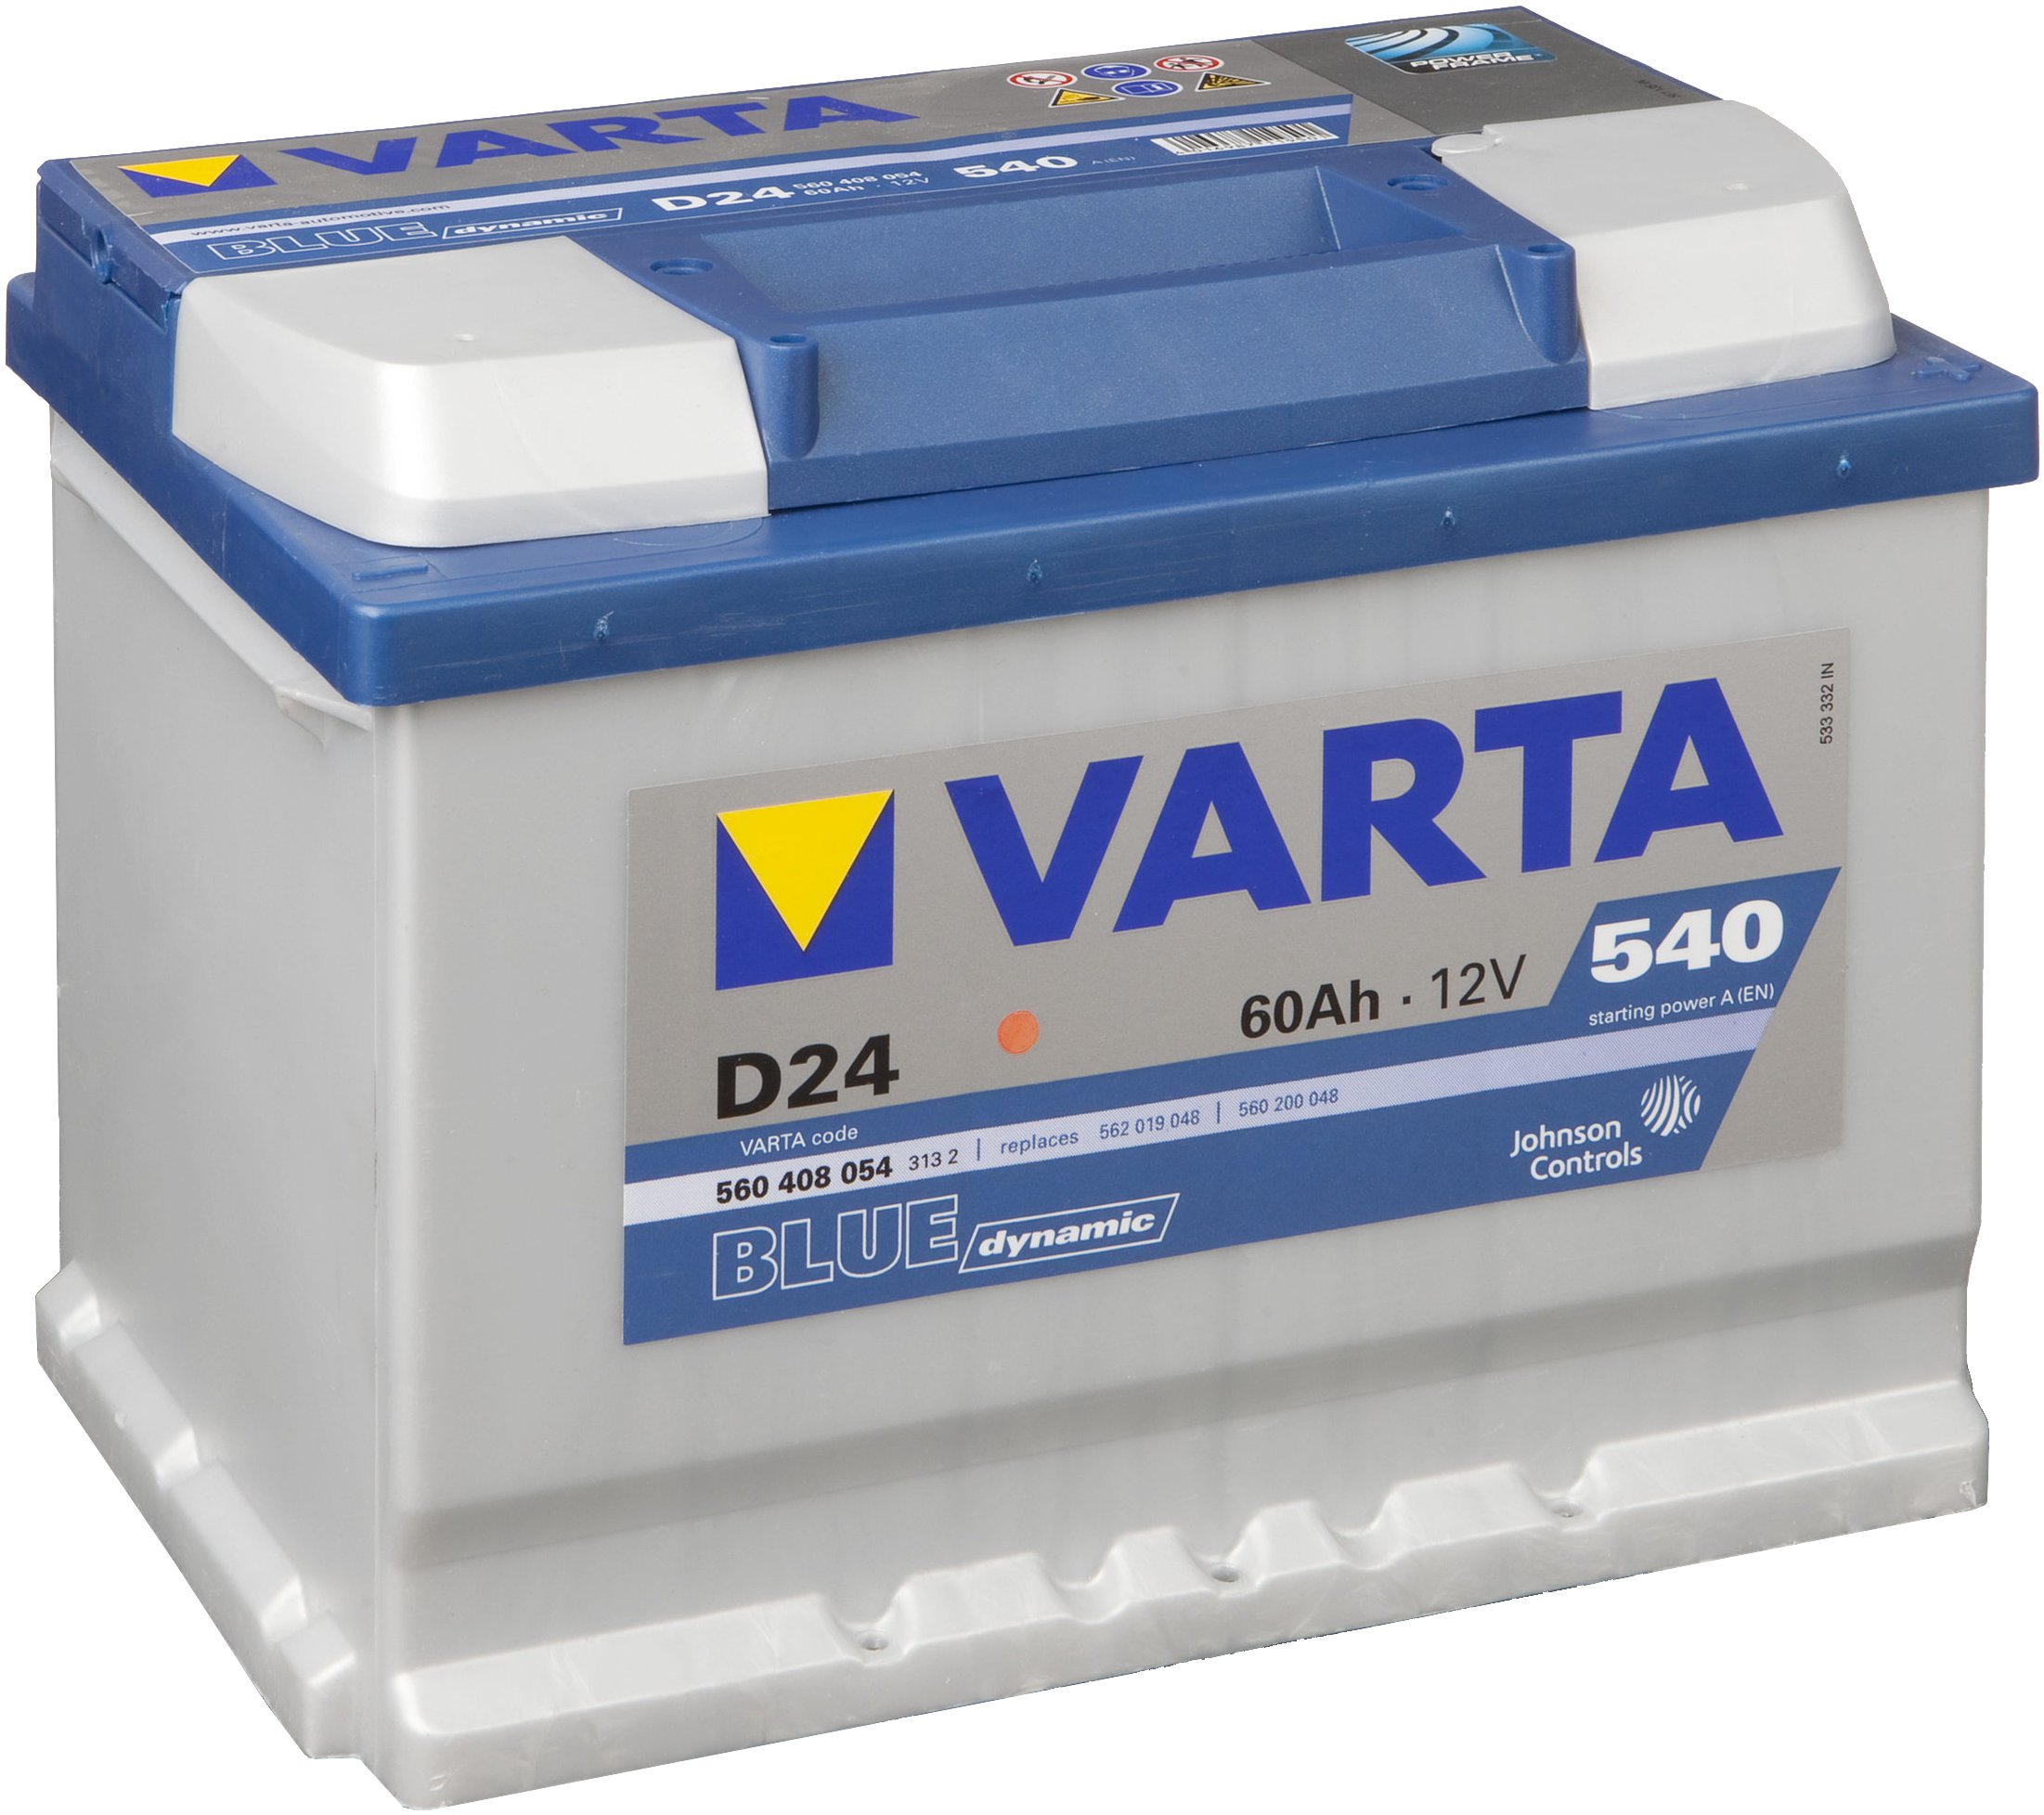 Автомобильный аккумулятор Varta Blue Dynamic D24 (560 408 054) –  . Купить автомобильный аккумулятор Varta Blue Dynamic D24 (560  408 054) по выгодной цене в Кишиневе, Молдове